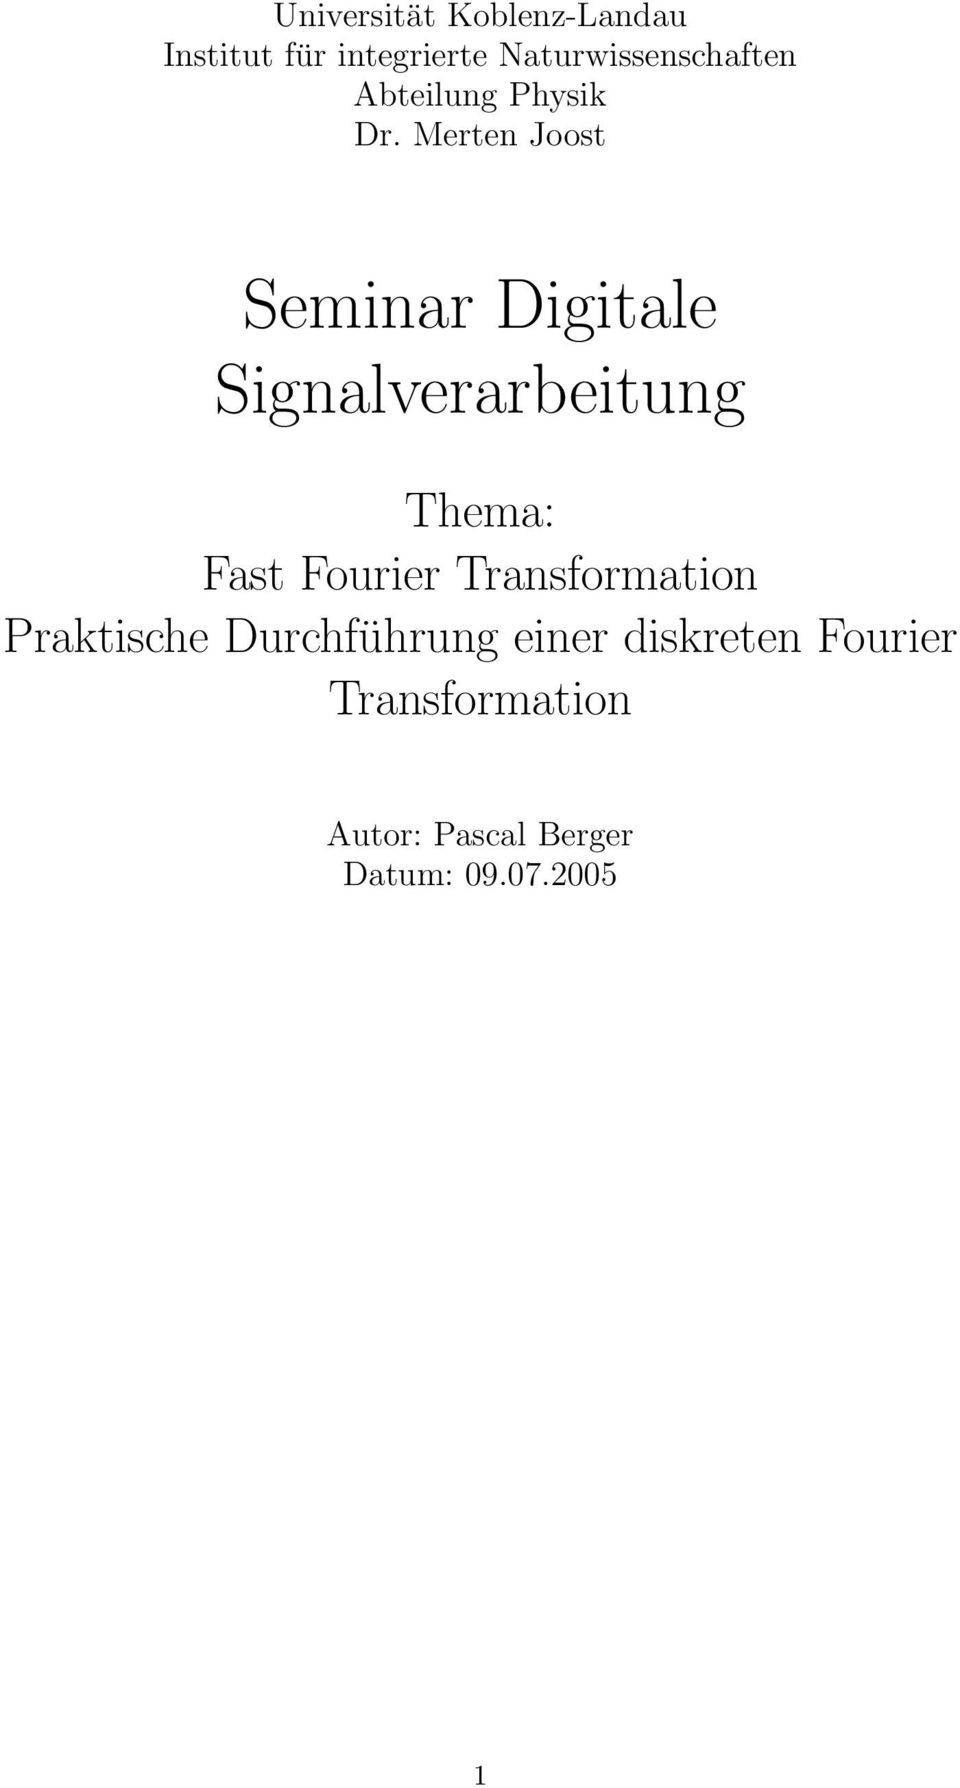 Merten Joost Seminar Digitale Signalverarbeitung Thema: Fast Fourier